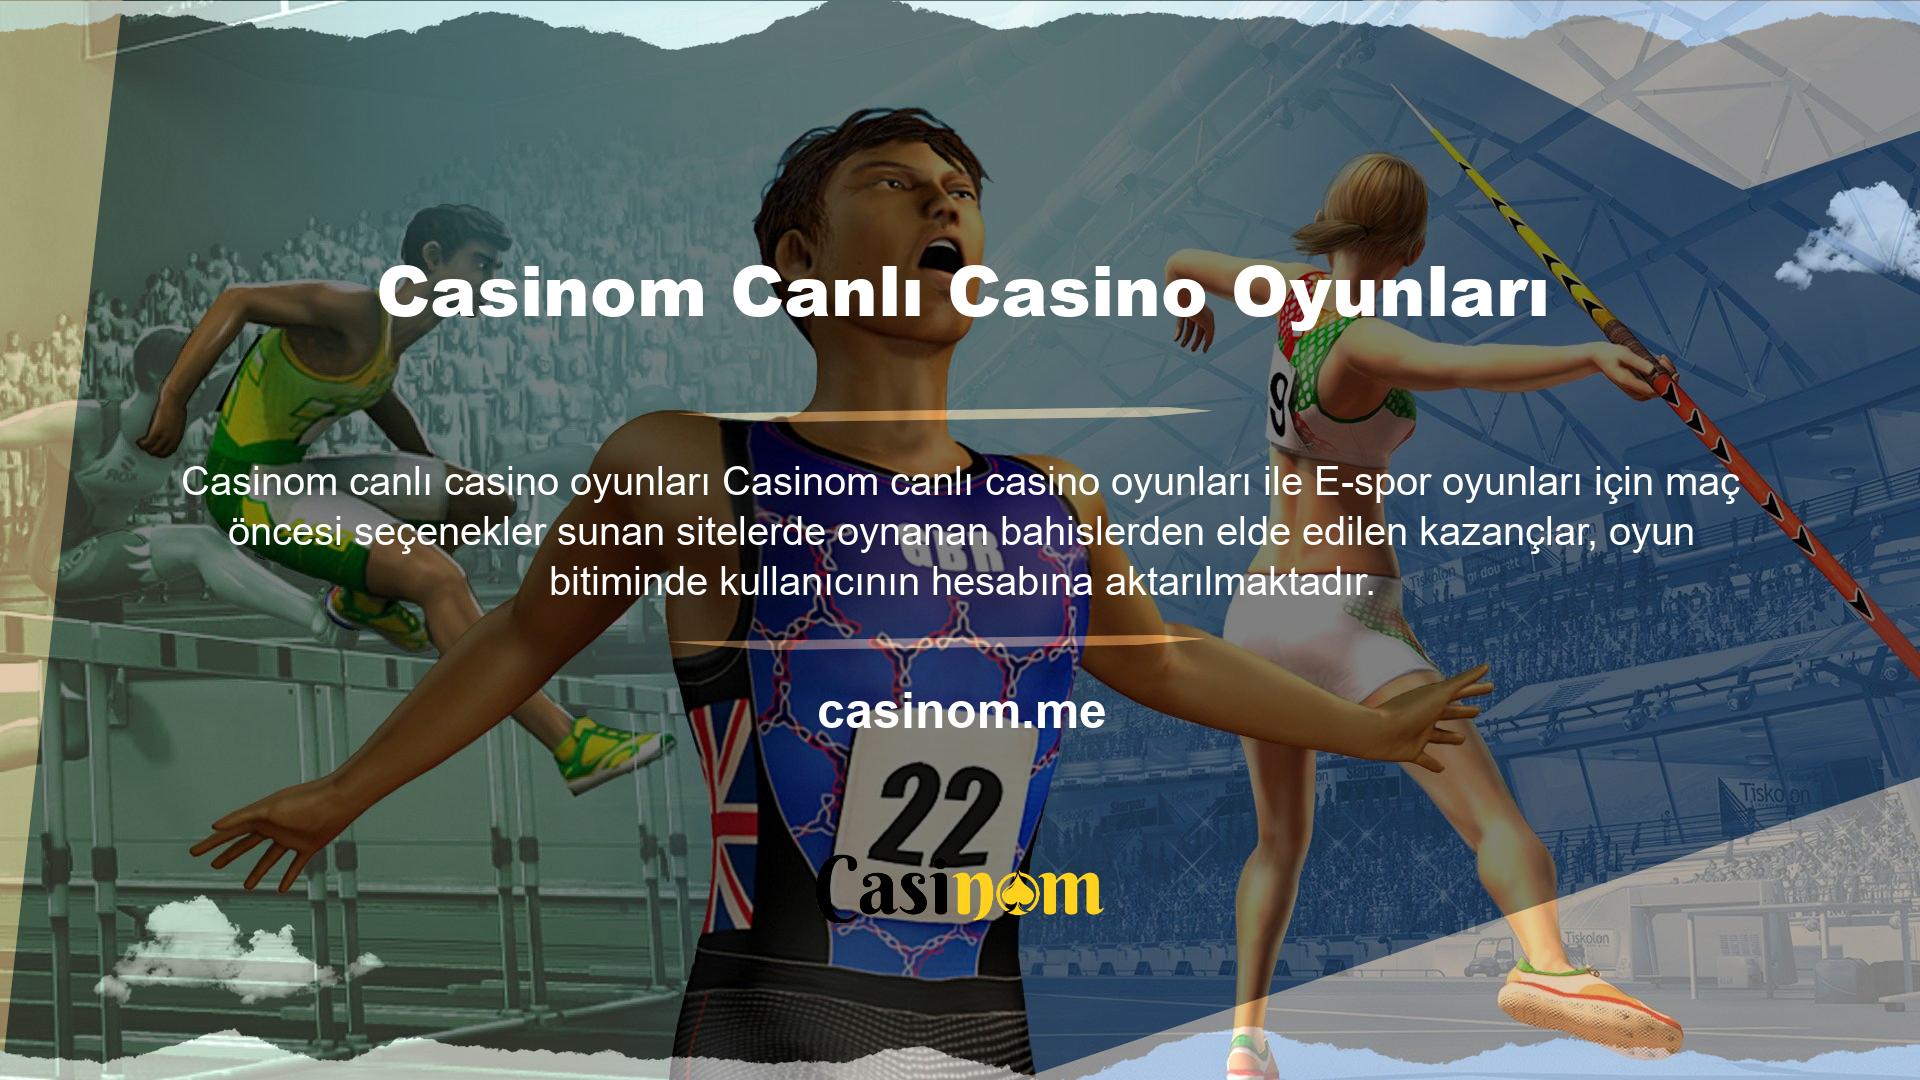 Casinom, kullanıcılarına çeşitli aktiviteler sunan bahis sitelerinden biridir